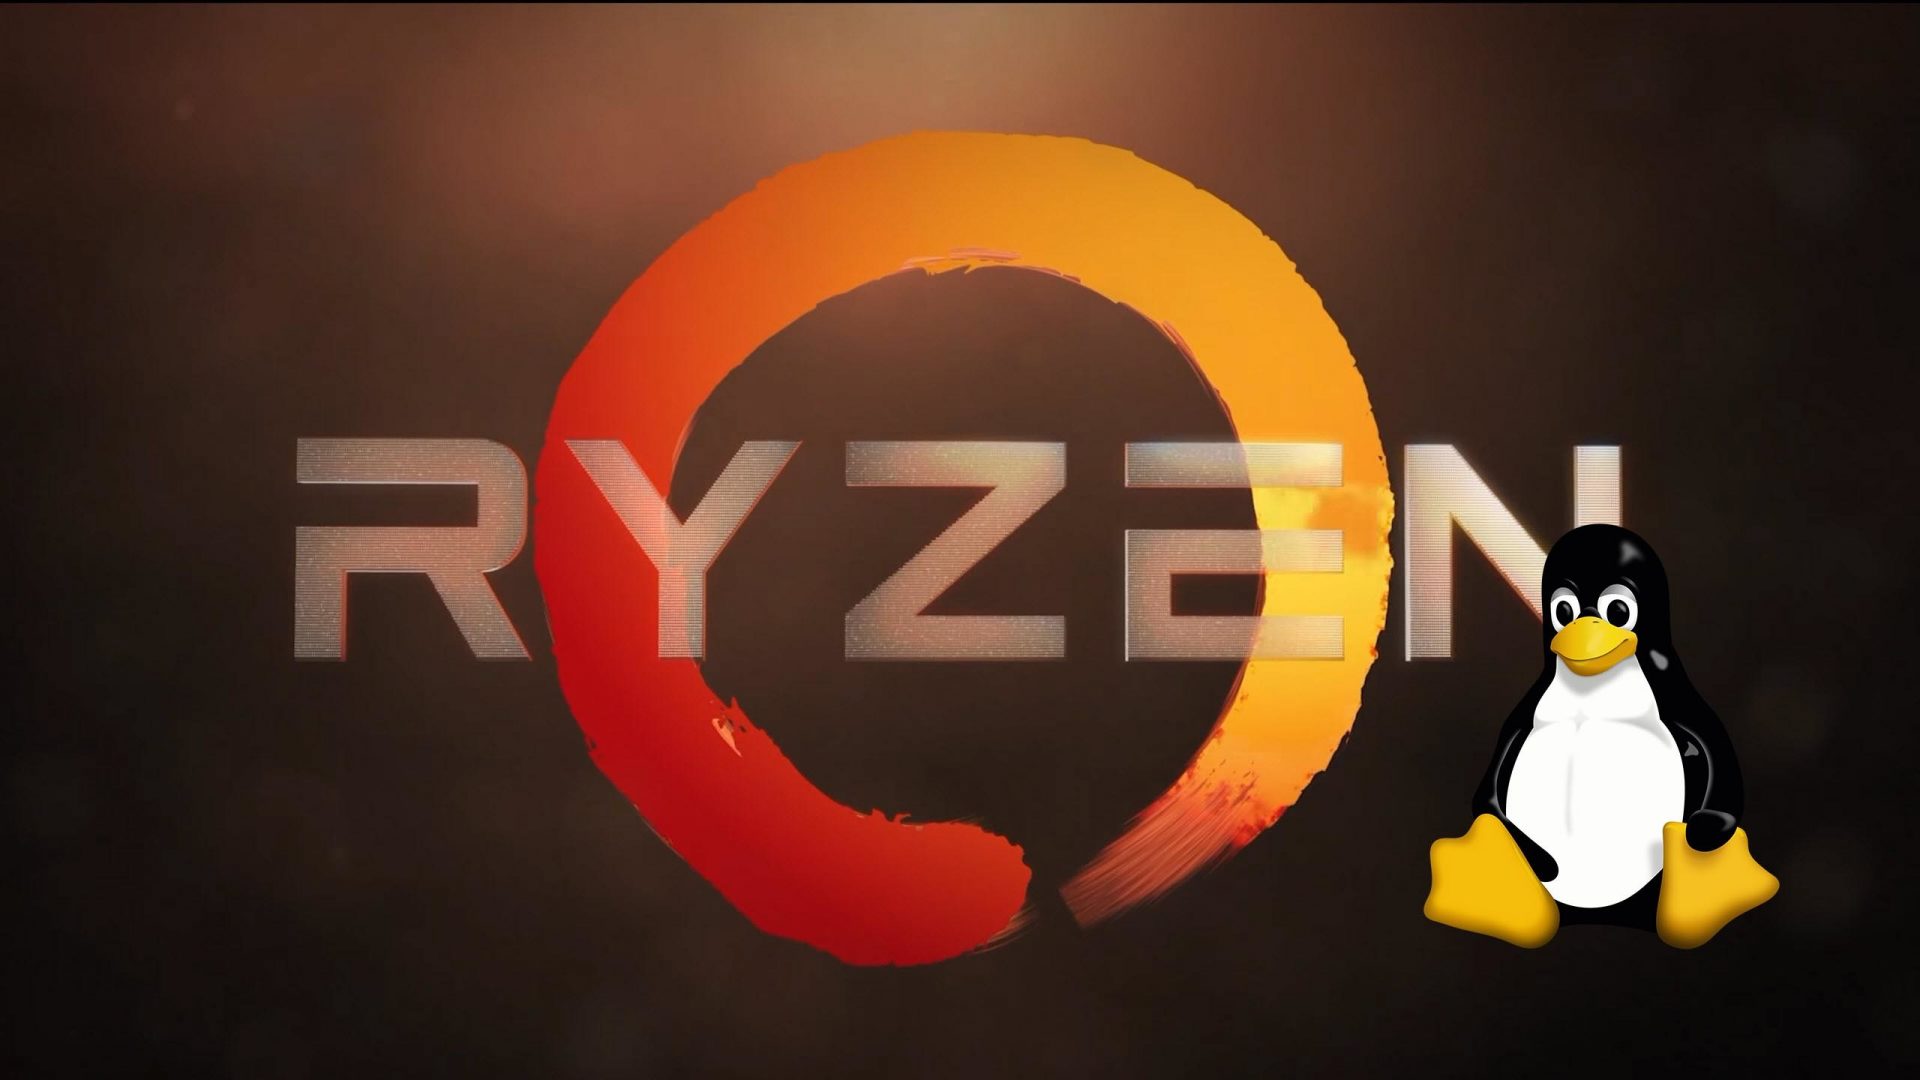 AMD-Ryzen-Linux-1920x1080.jpg